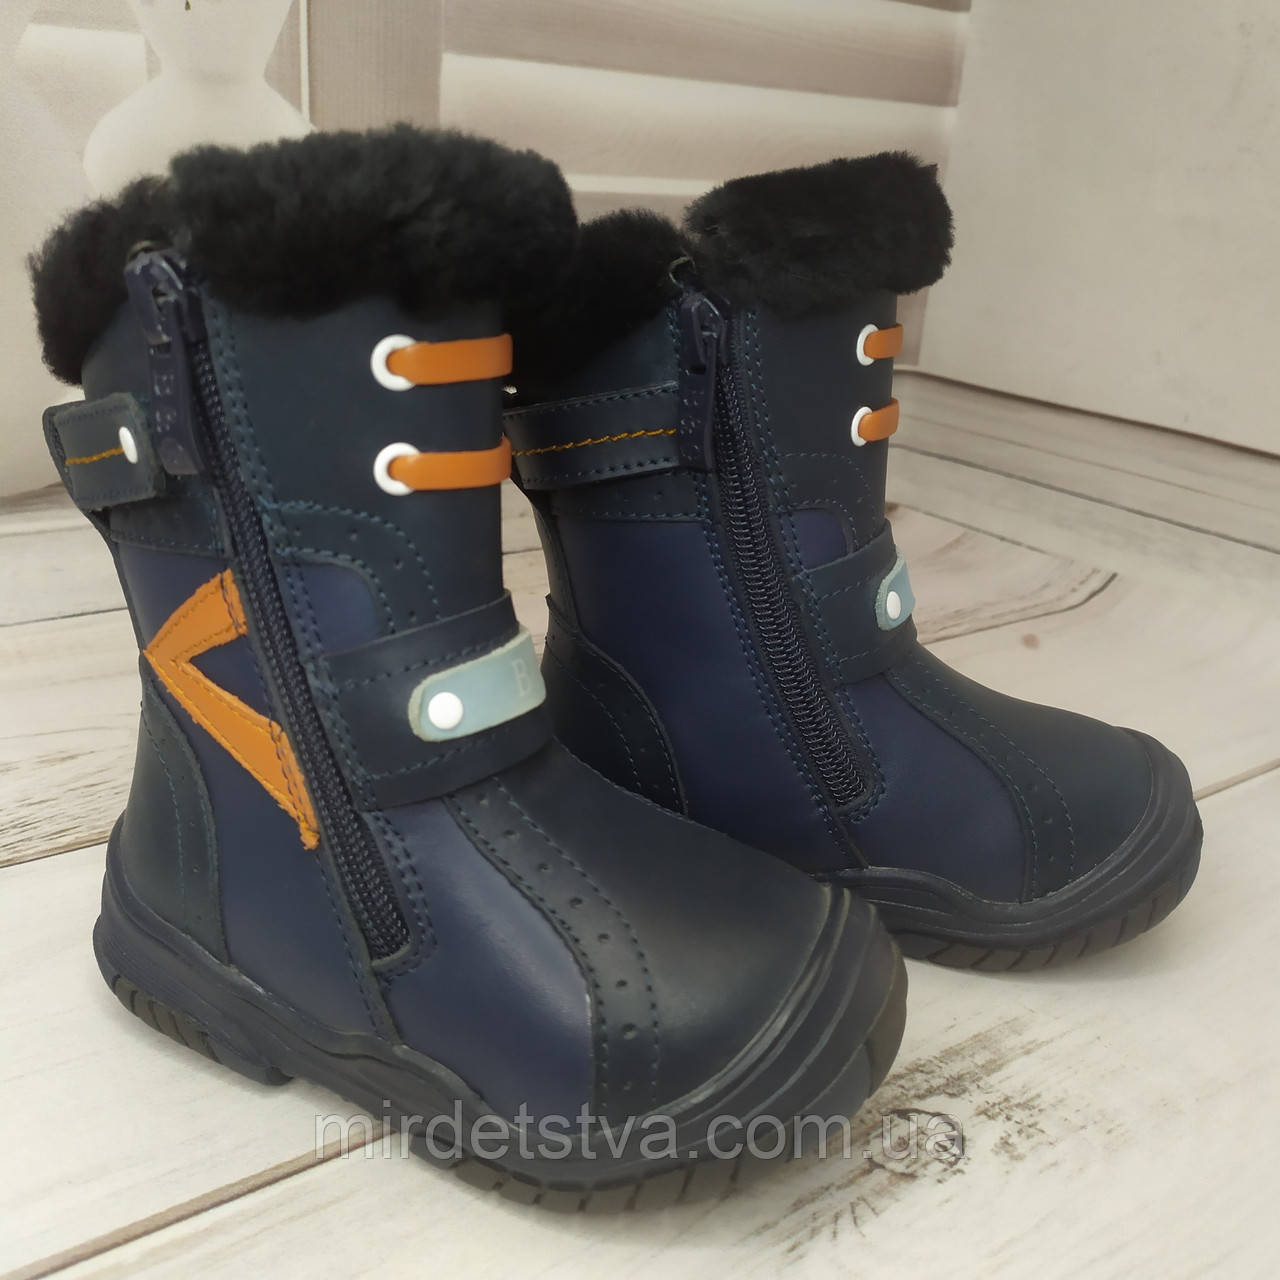 Дитячі зимові шкіряні черевики чоботи на хутрі для хлопчика B&G синій розміри 23 26